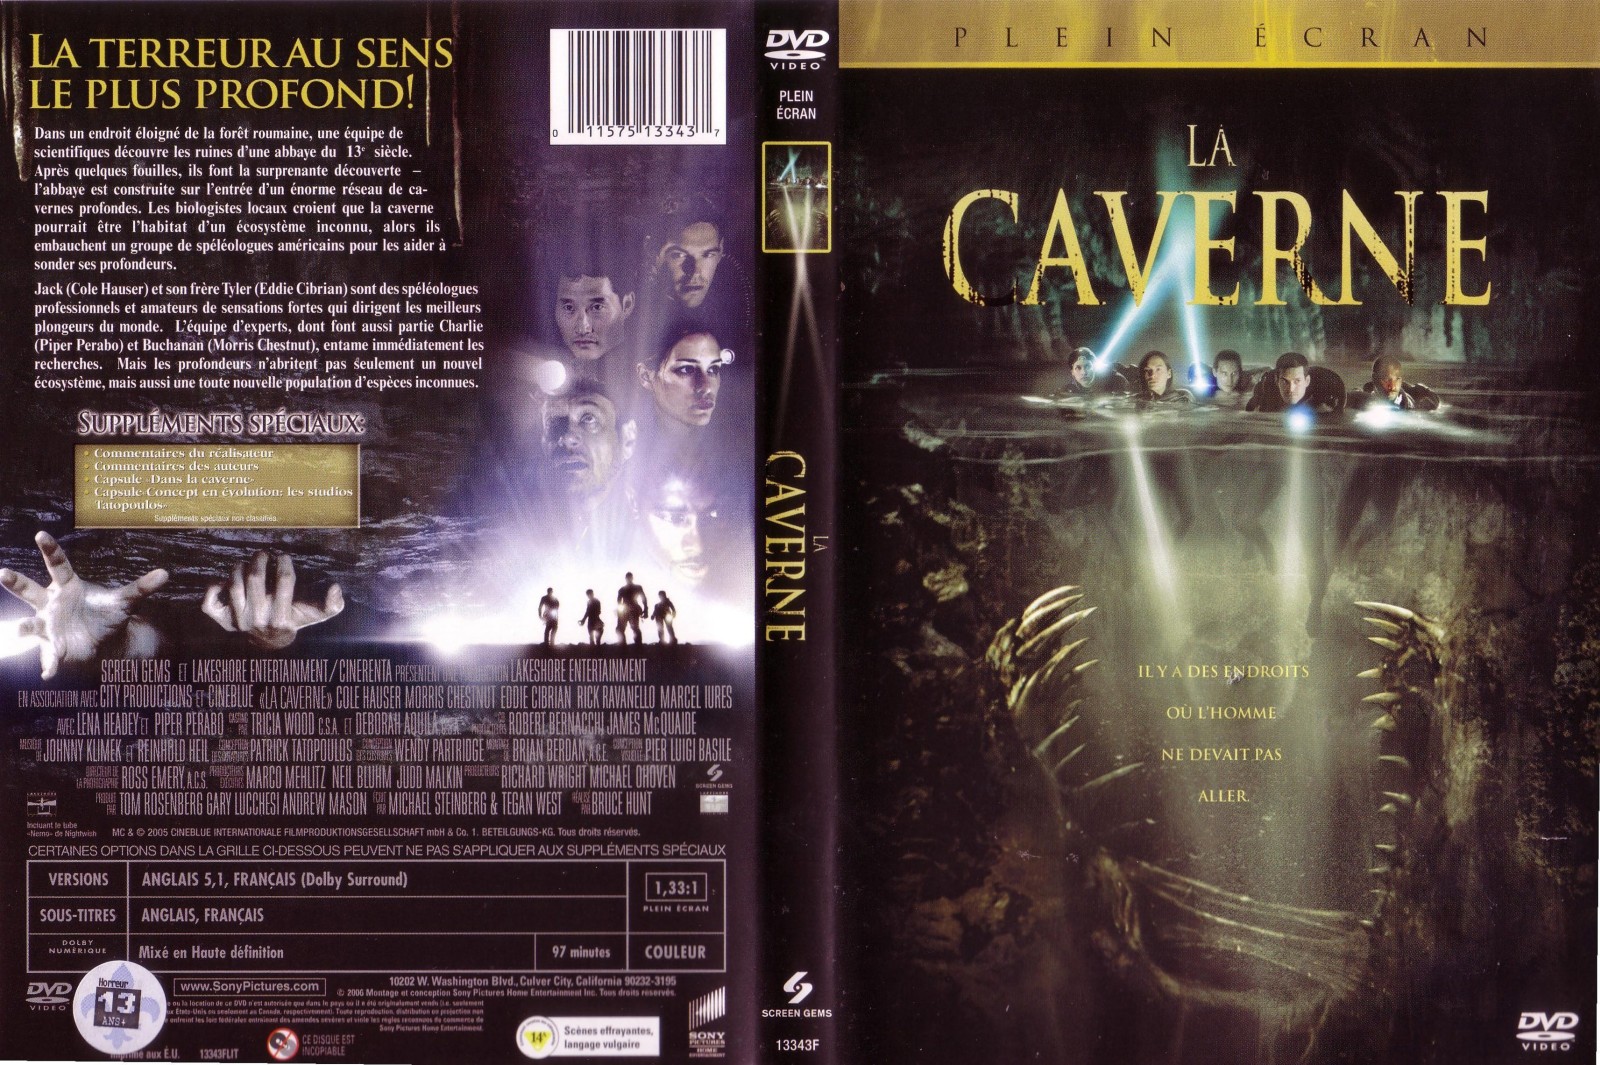 Jaquette DVD La caverne